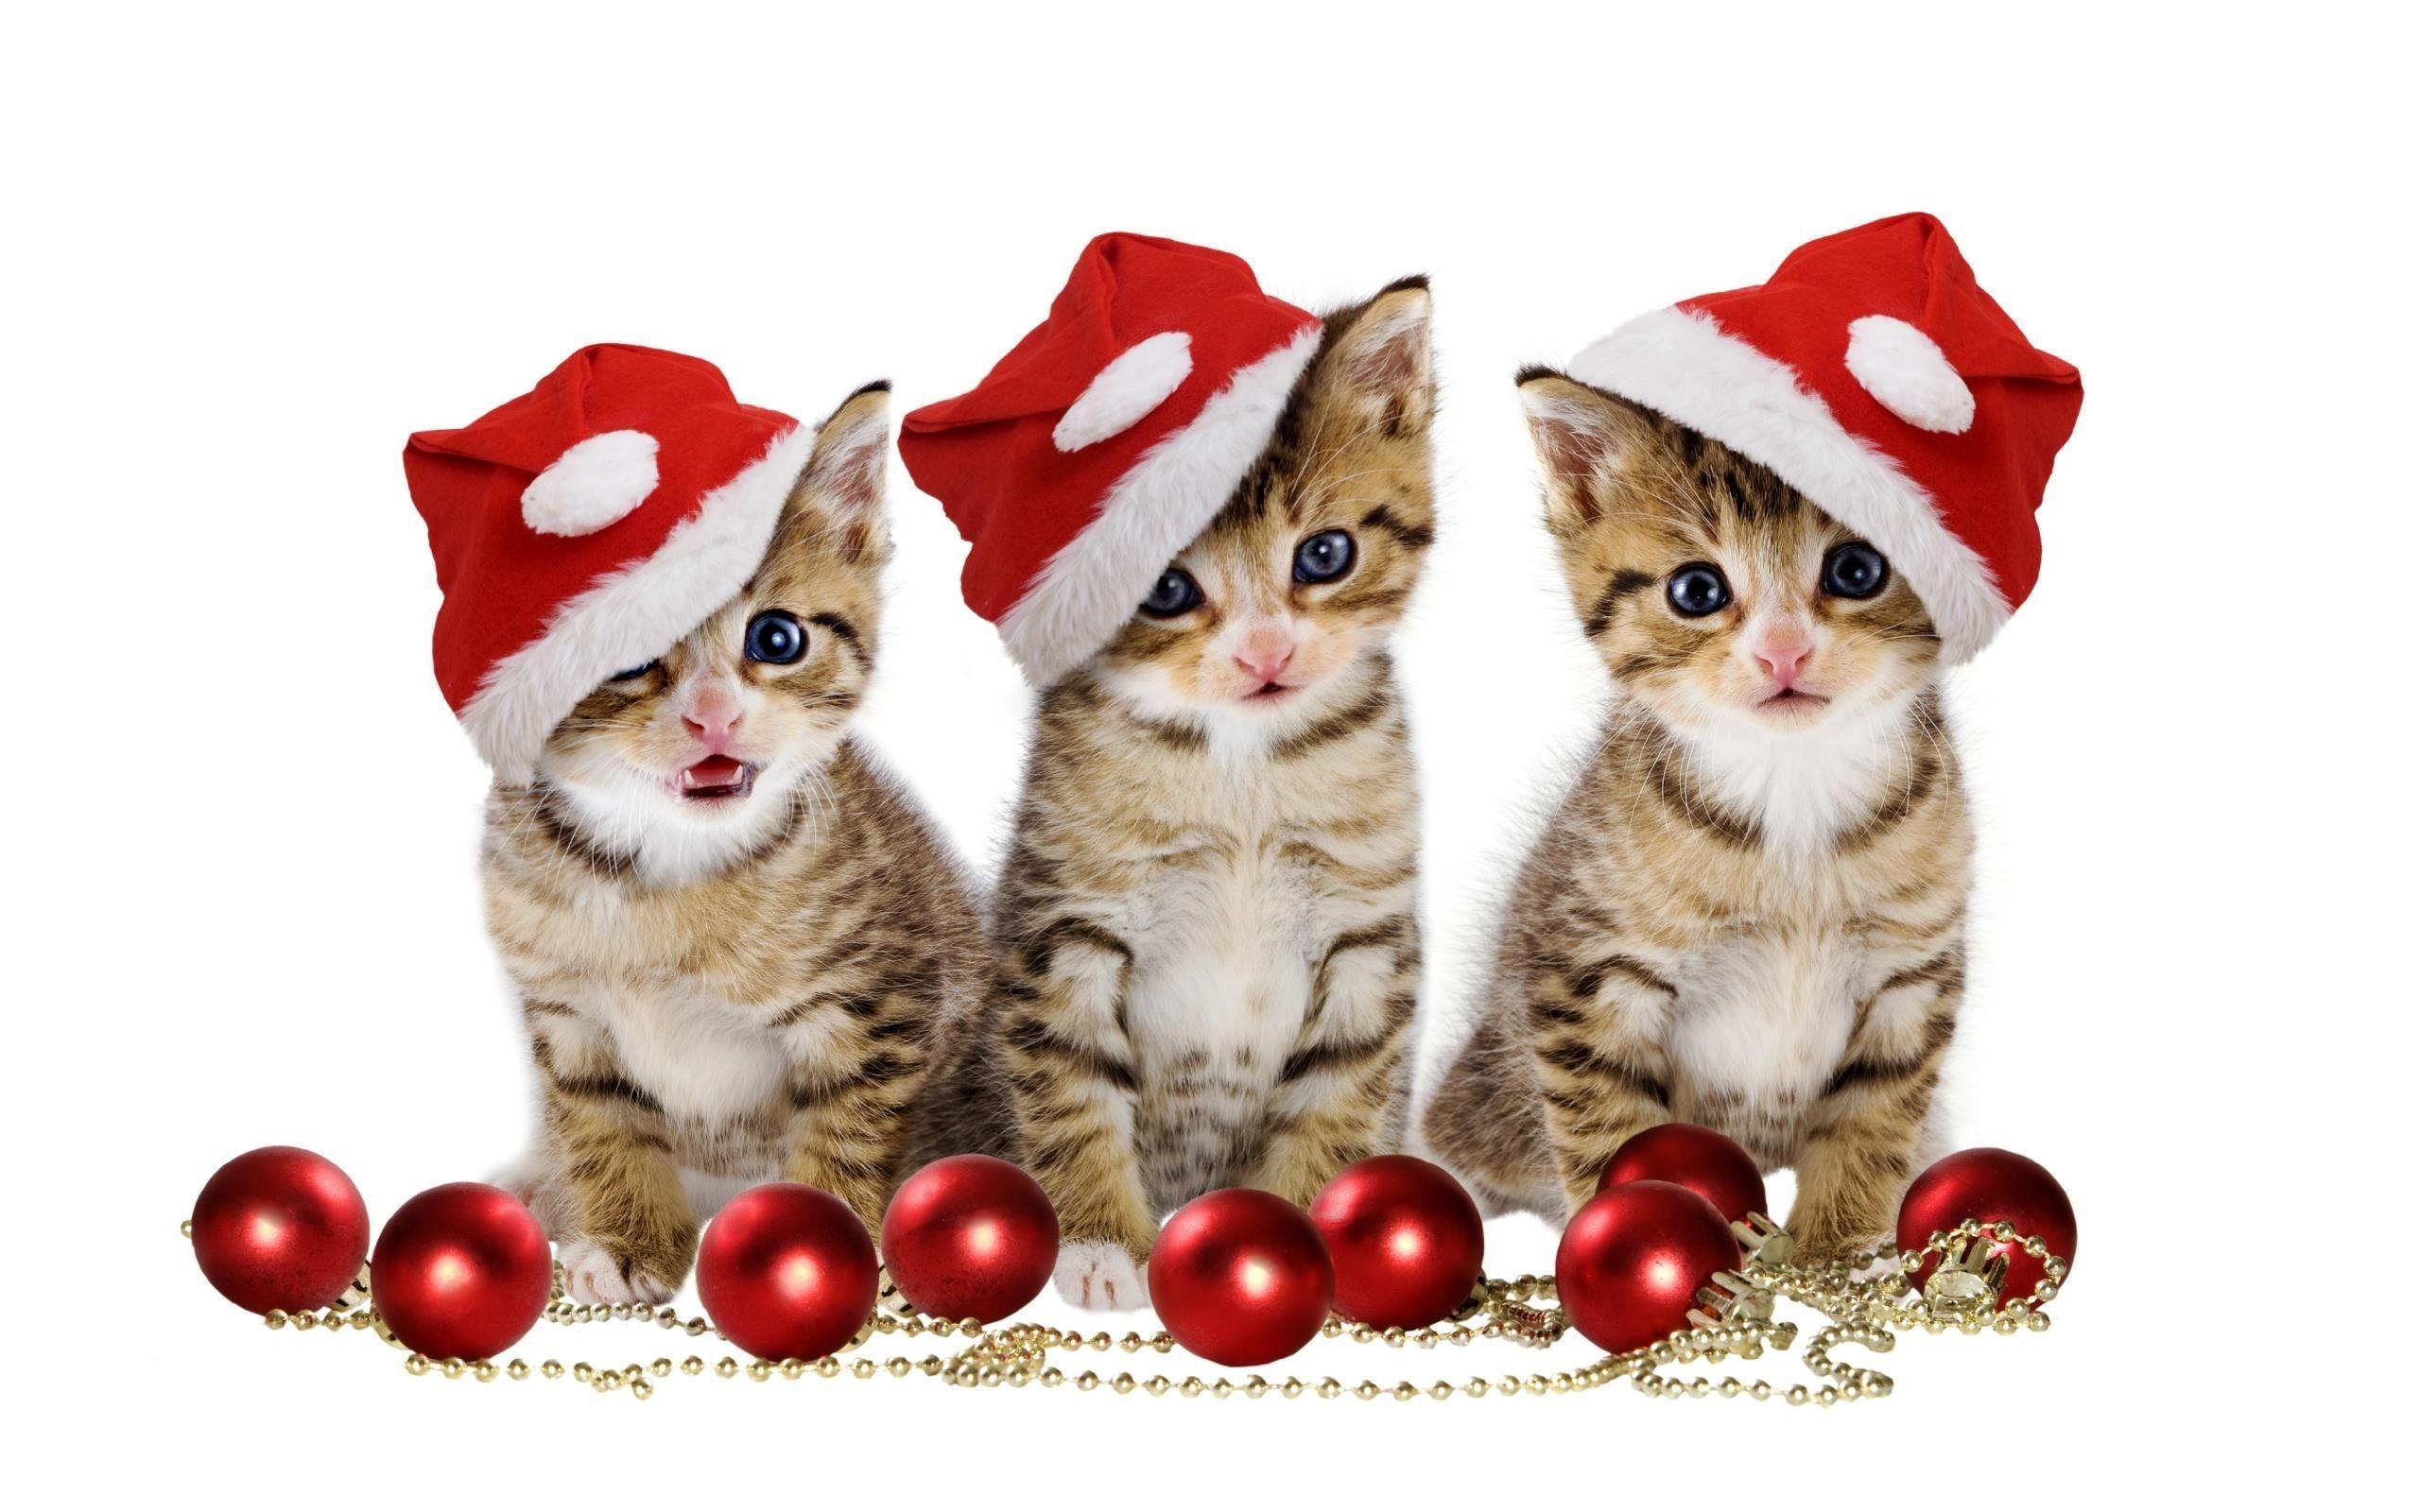 Merry Christmas Kitten Images